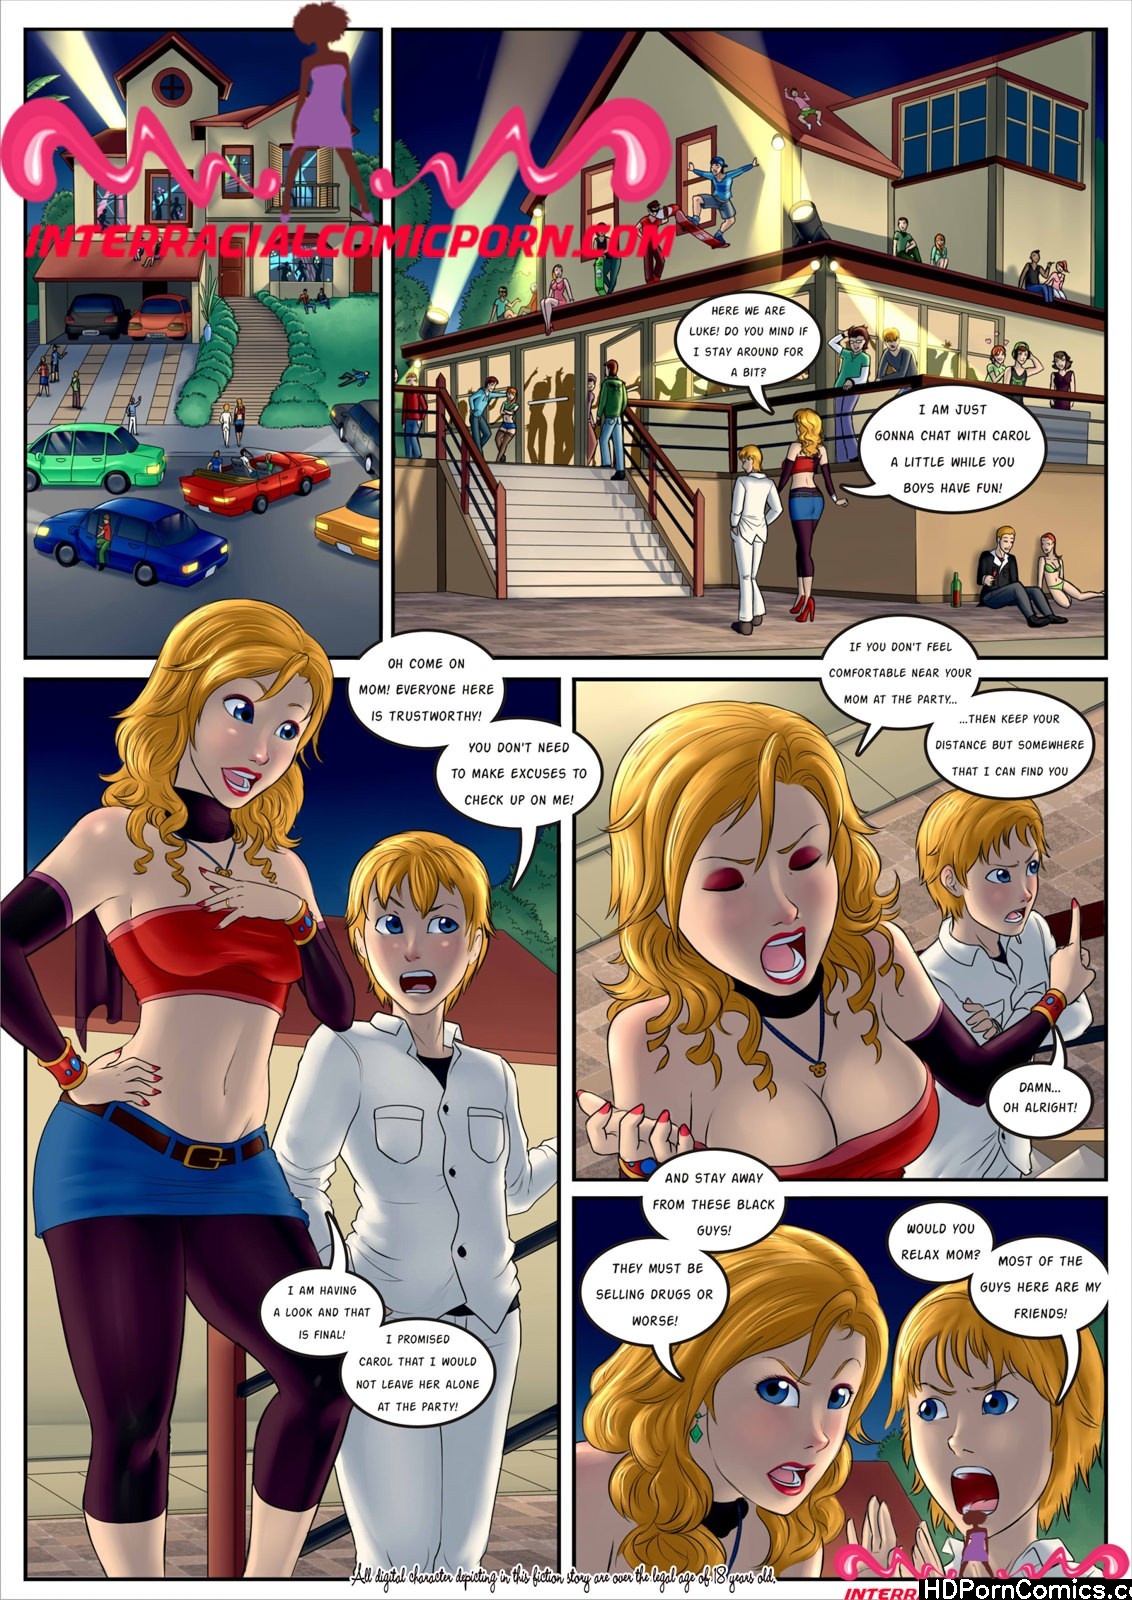 Party Slut - Issue 1 Cartoon Porn Comic - HD Porn Comix